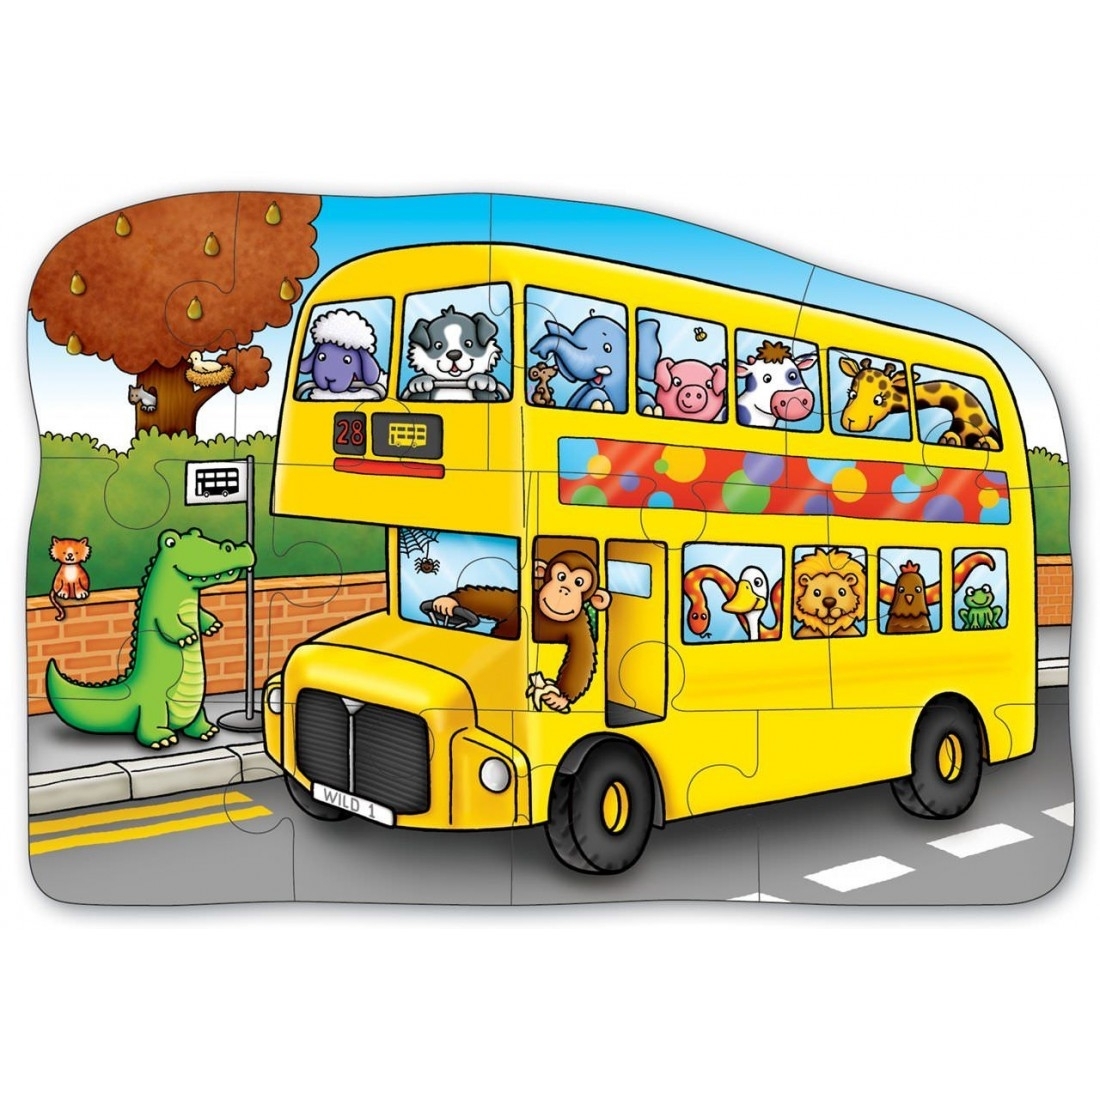 Детский автобус для детей. Автобус для детей. Автобус рисунок. Автобус картинка для детей. Веселый автобус.